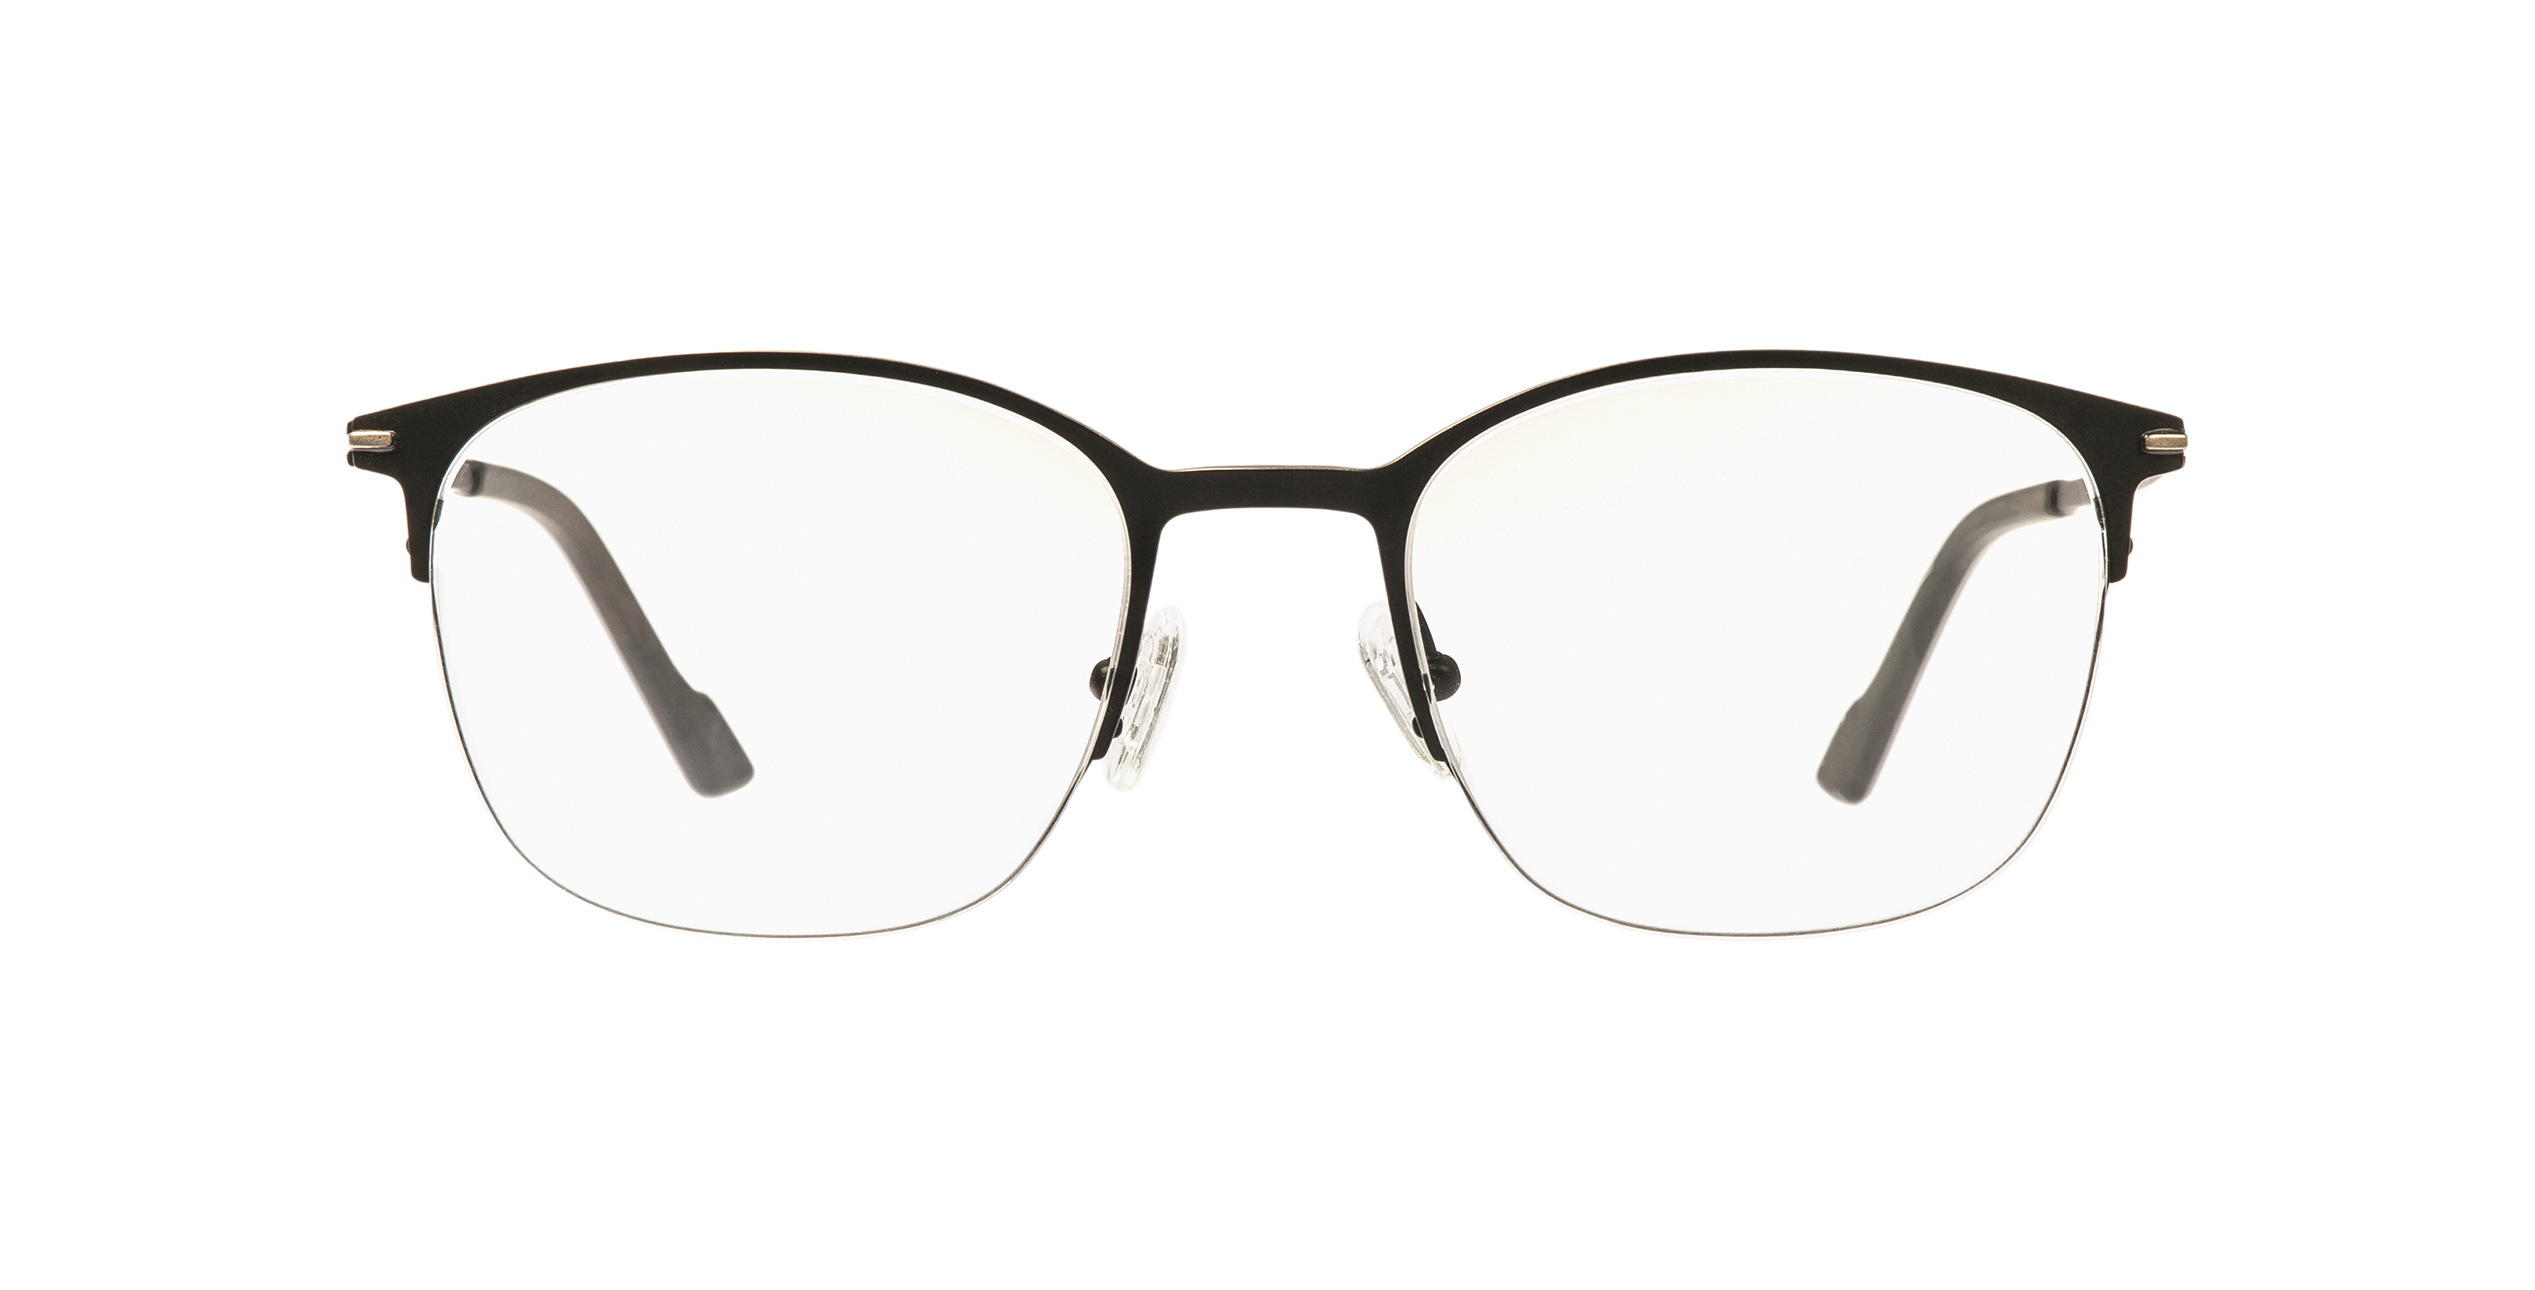 Baldessarini brille - Die hochwertigsten Baldessarini brille im Überblick